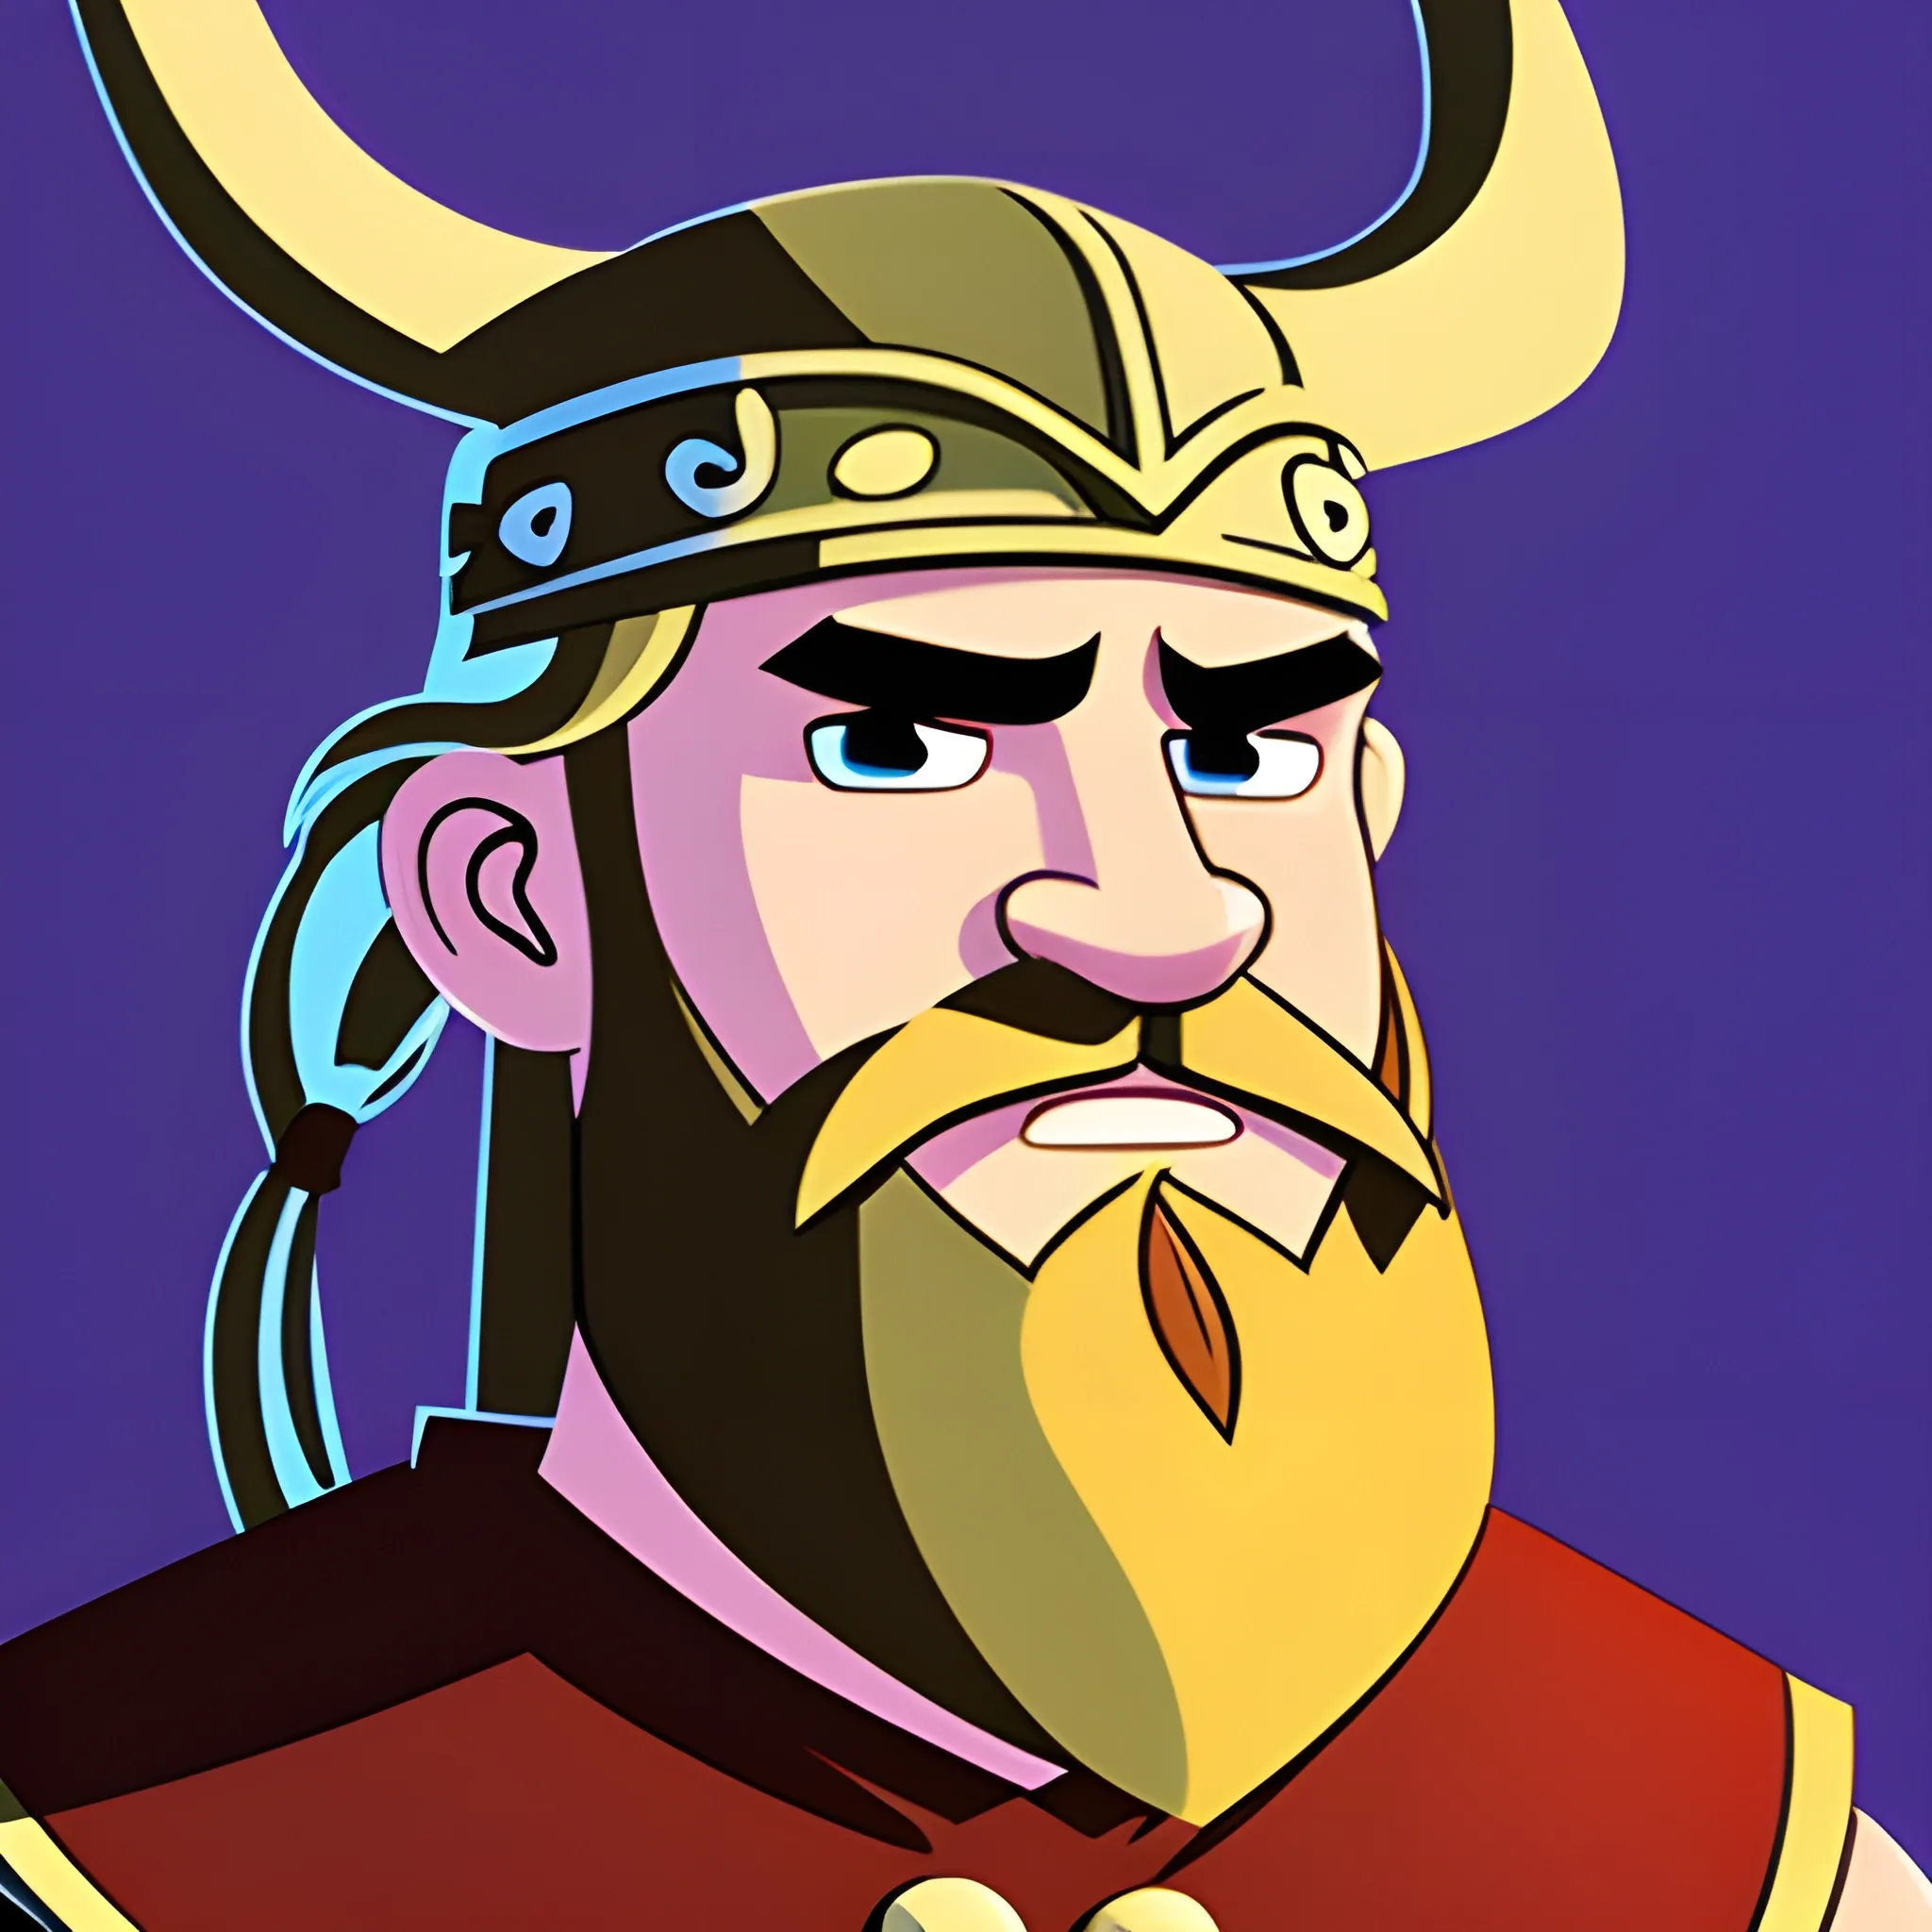 
, Cartoon viking